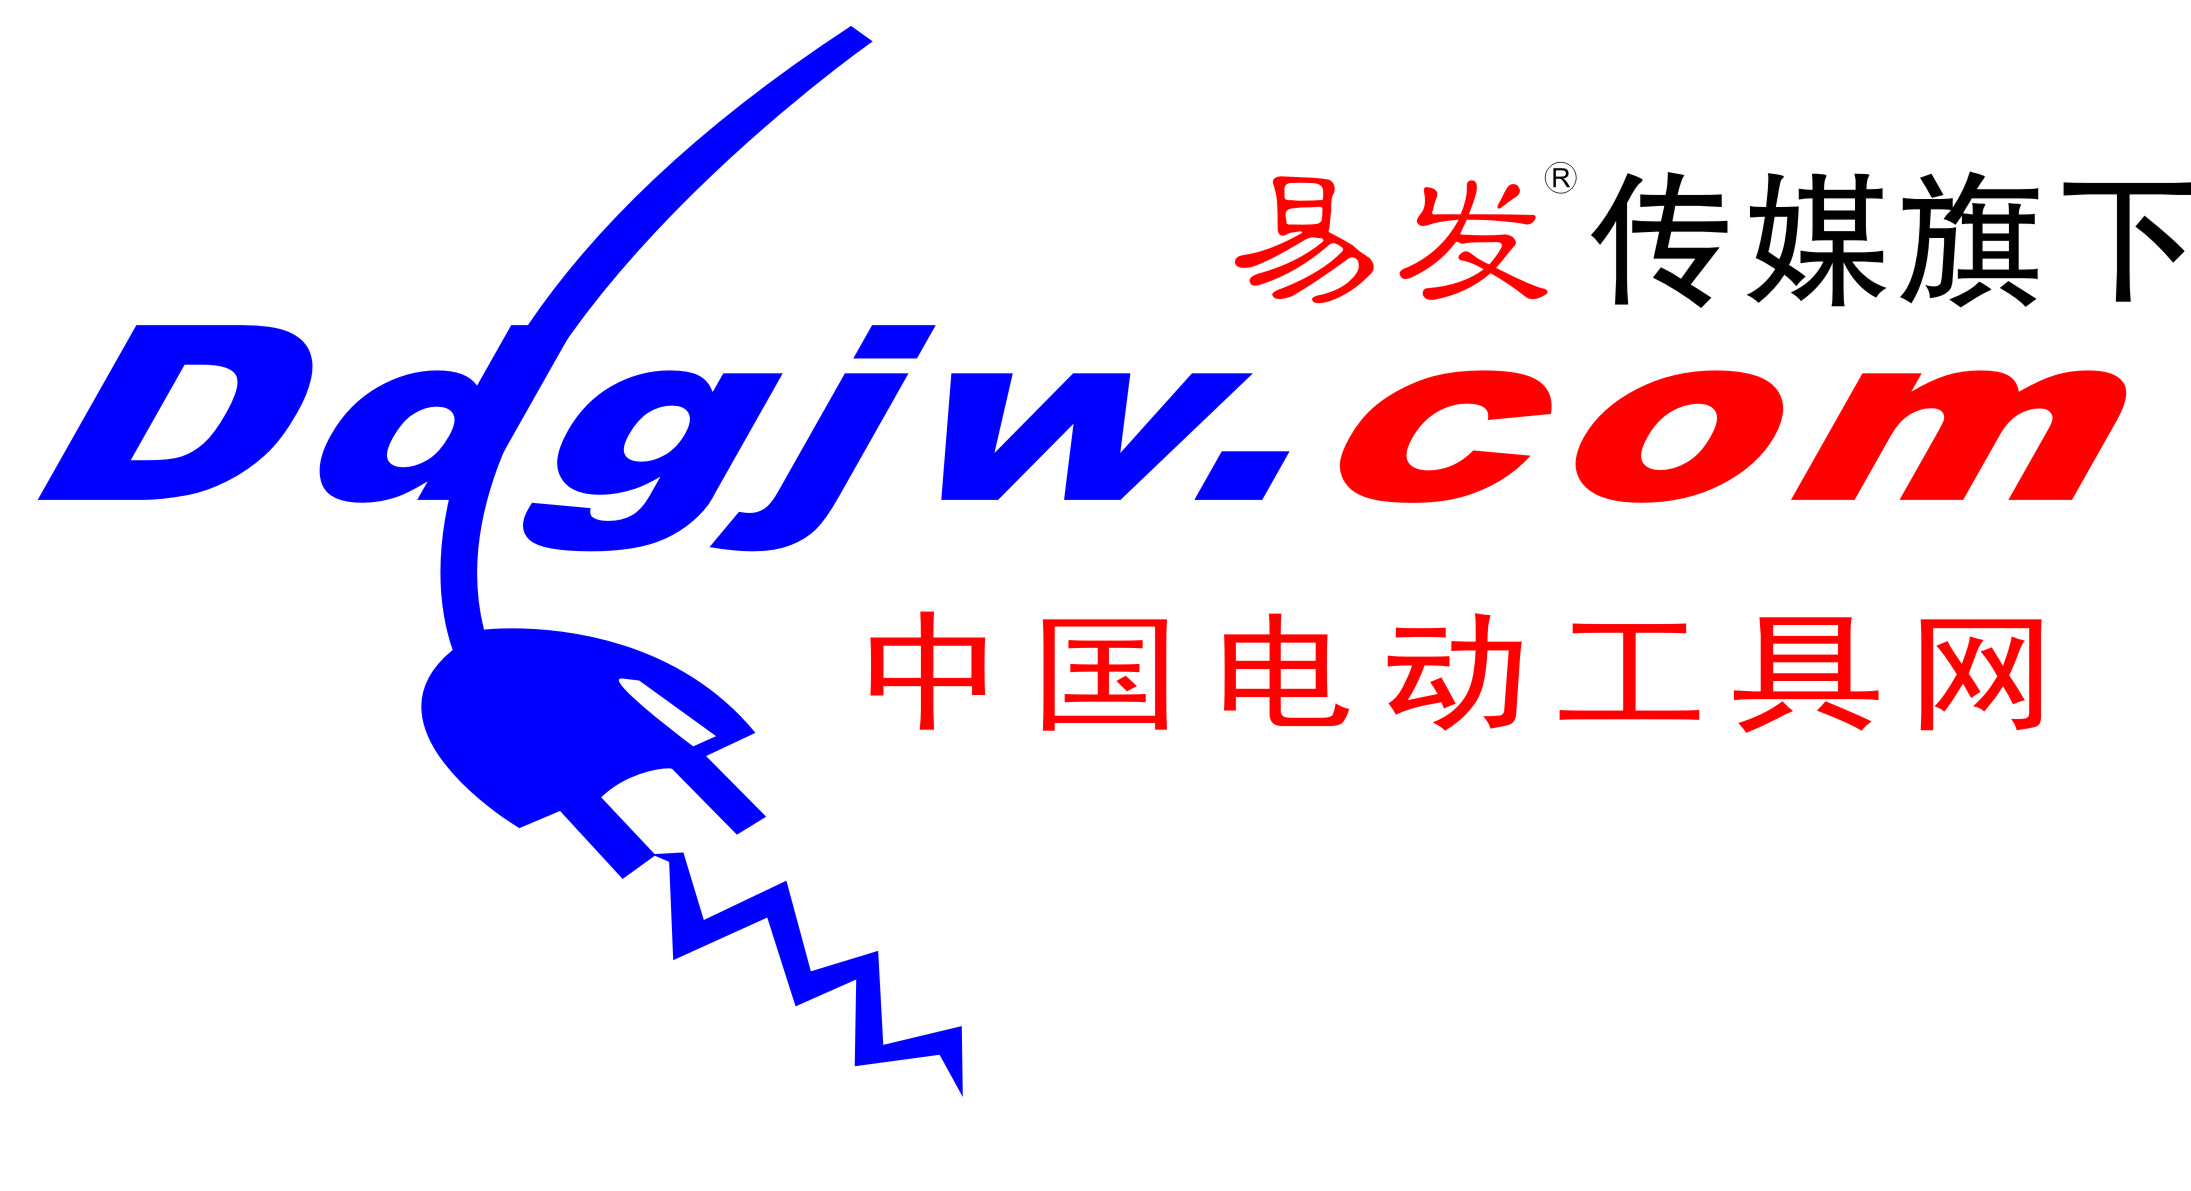 中国电动工具网